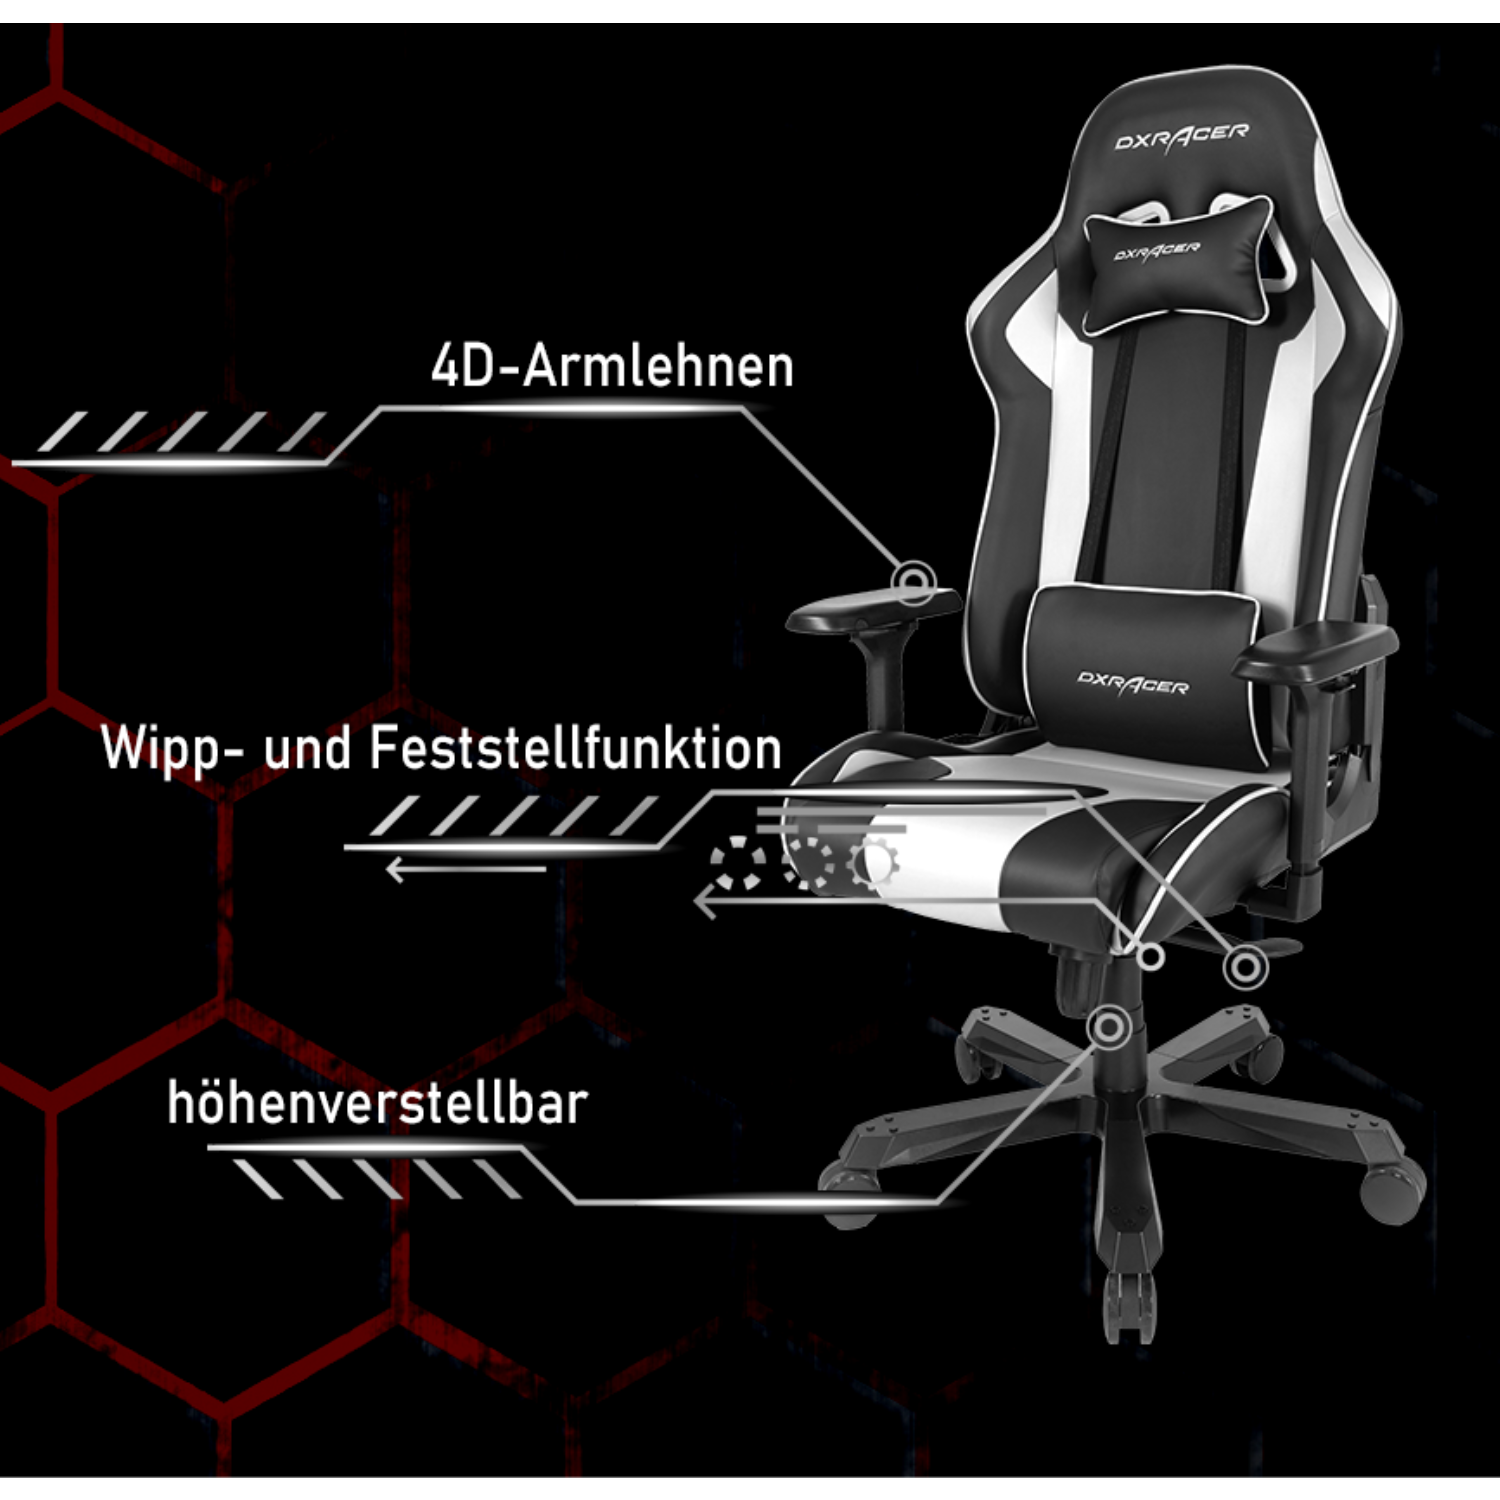 K-Series Schwarz Gaming Chair, DXRACER